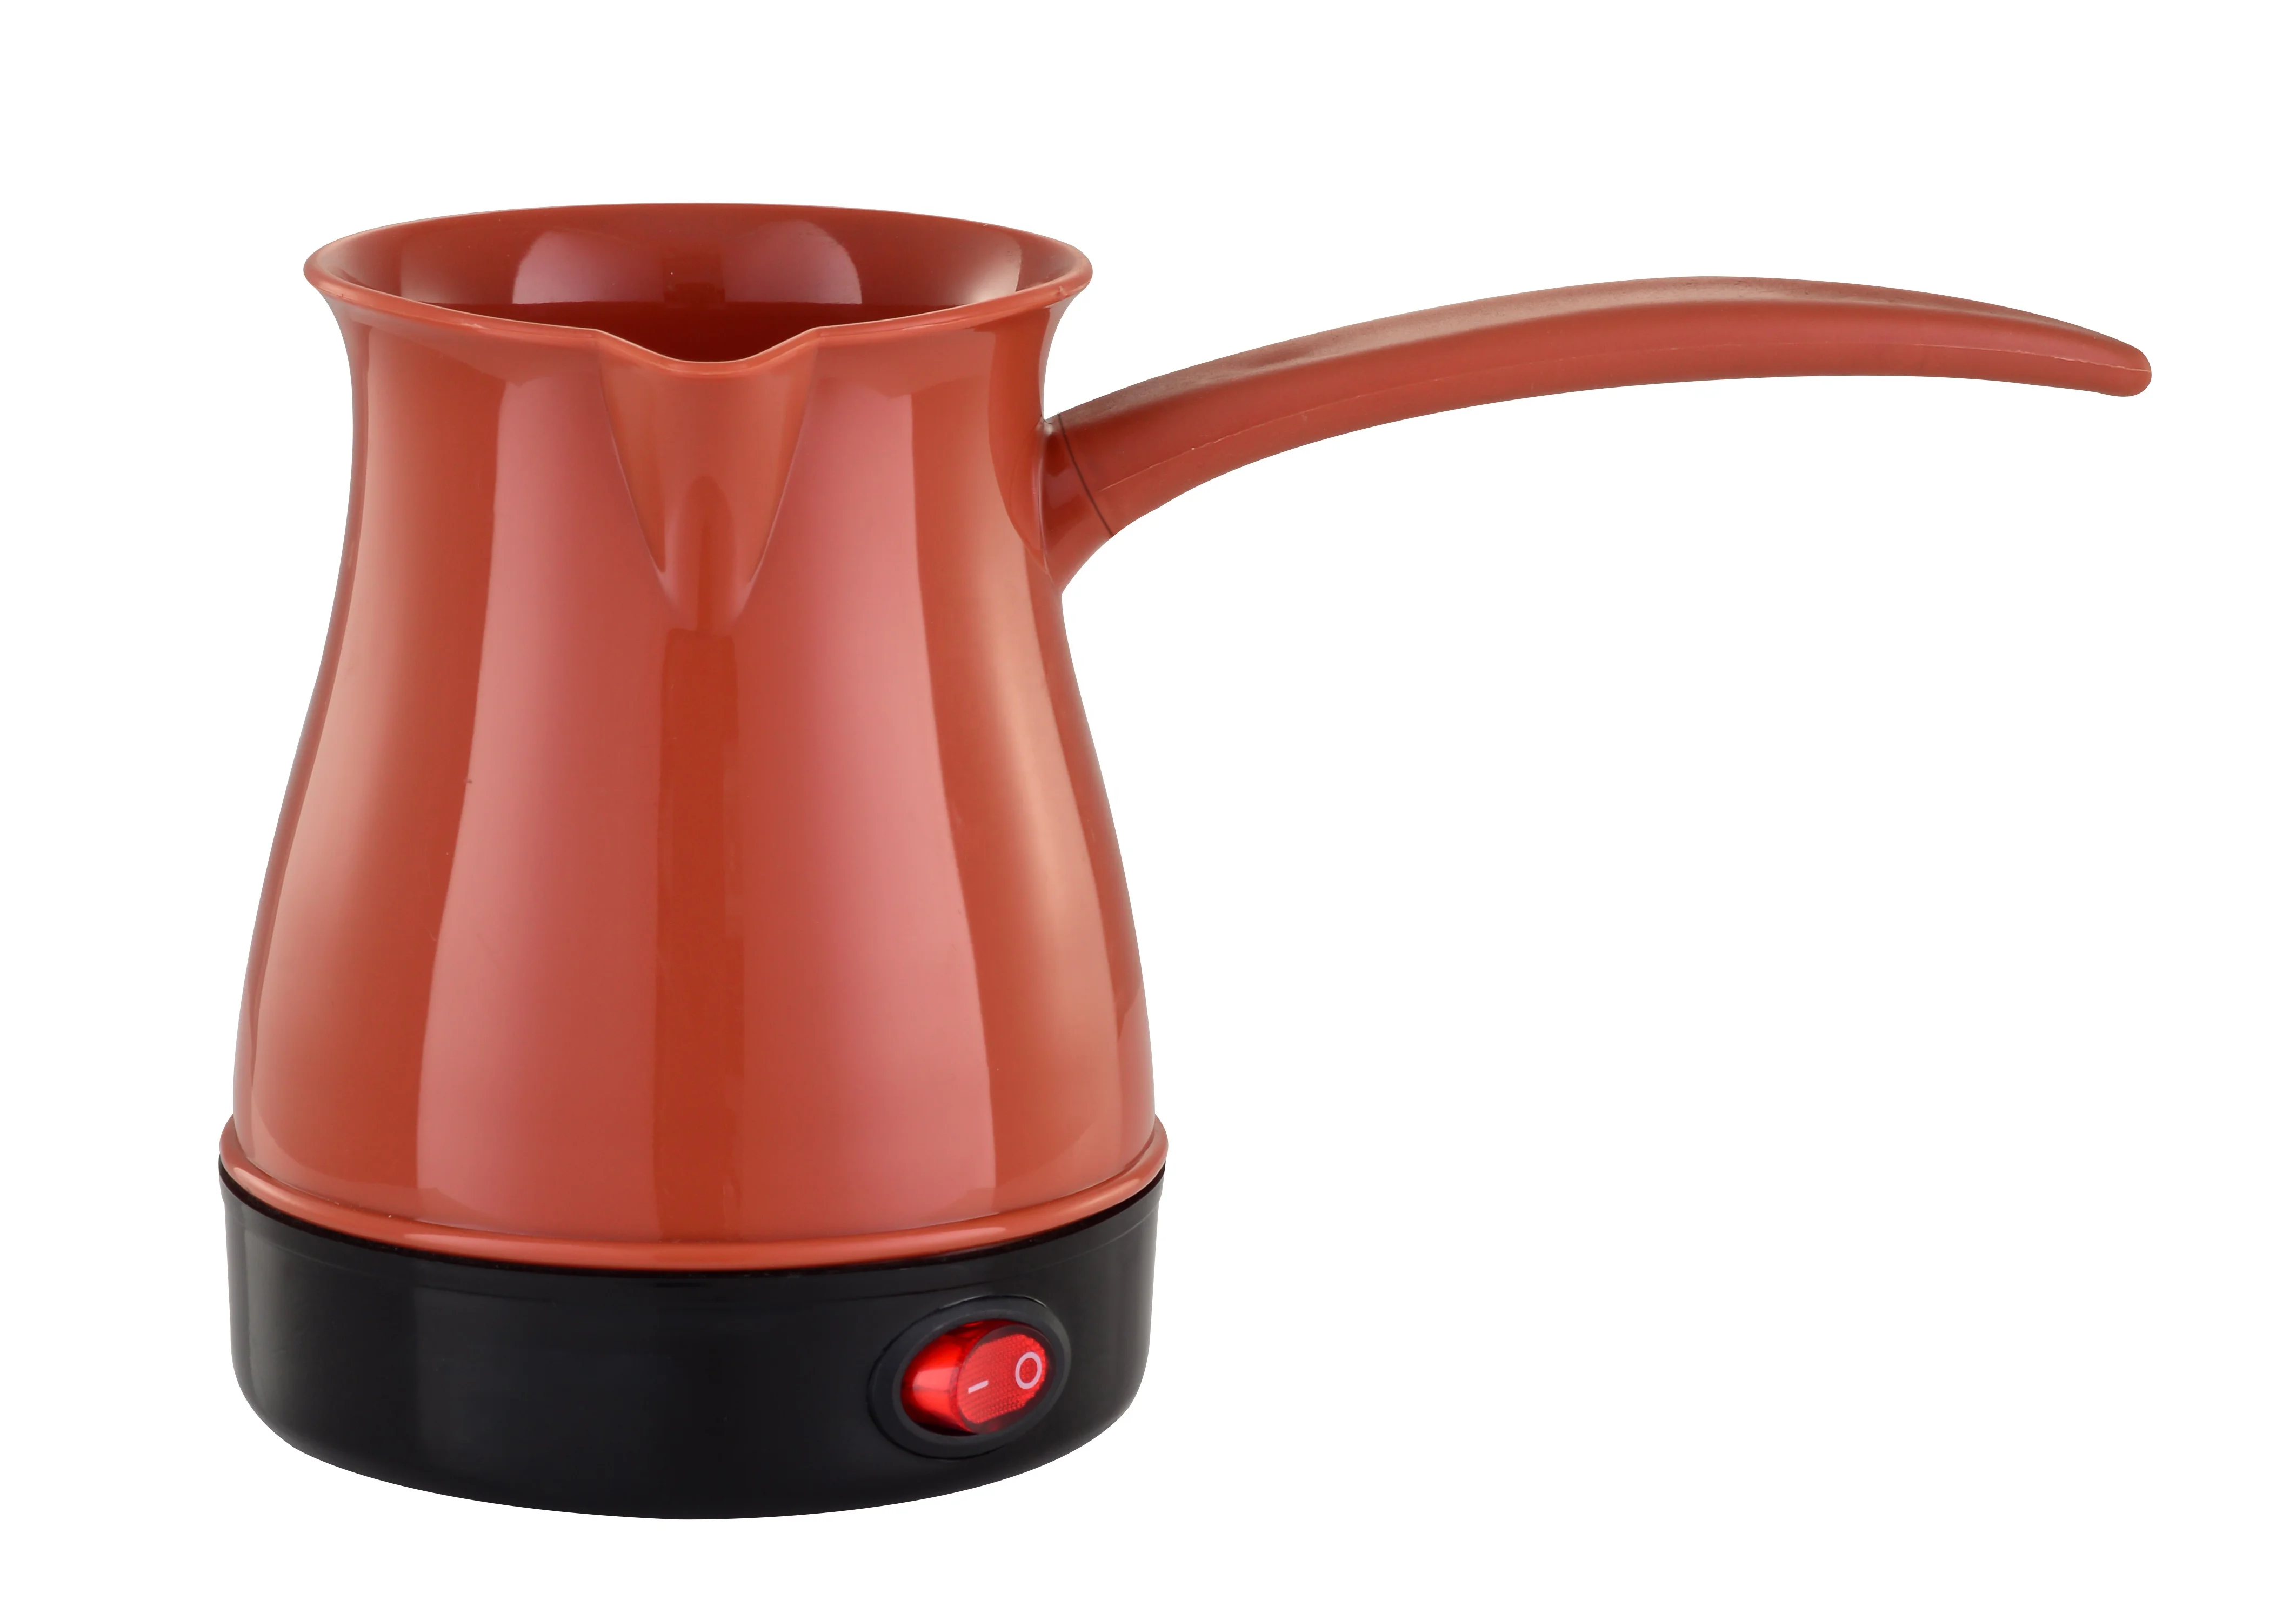 600W Cordless Coffee Maker 0.5L Coffee Pots Moka Pot Semi-automatic Turkish Coffee  Maker Thermal